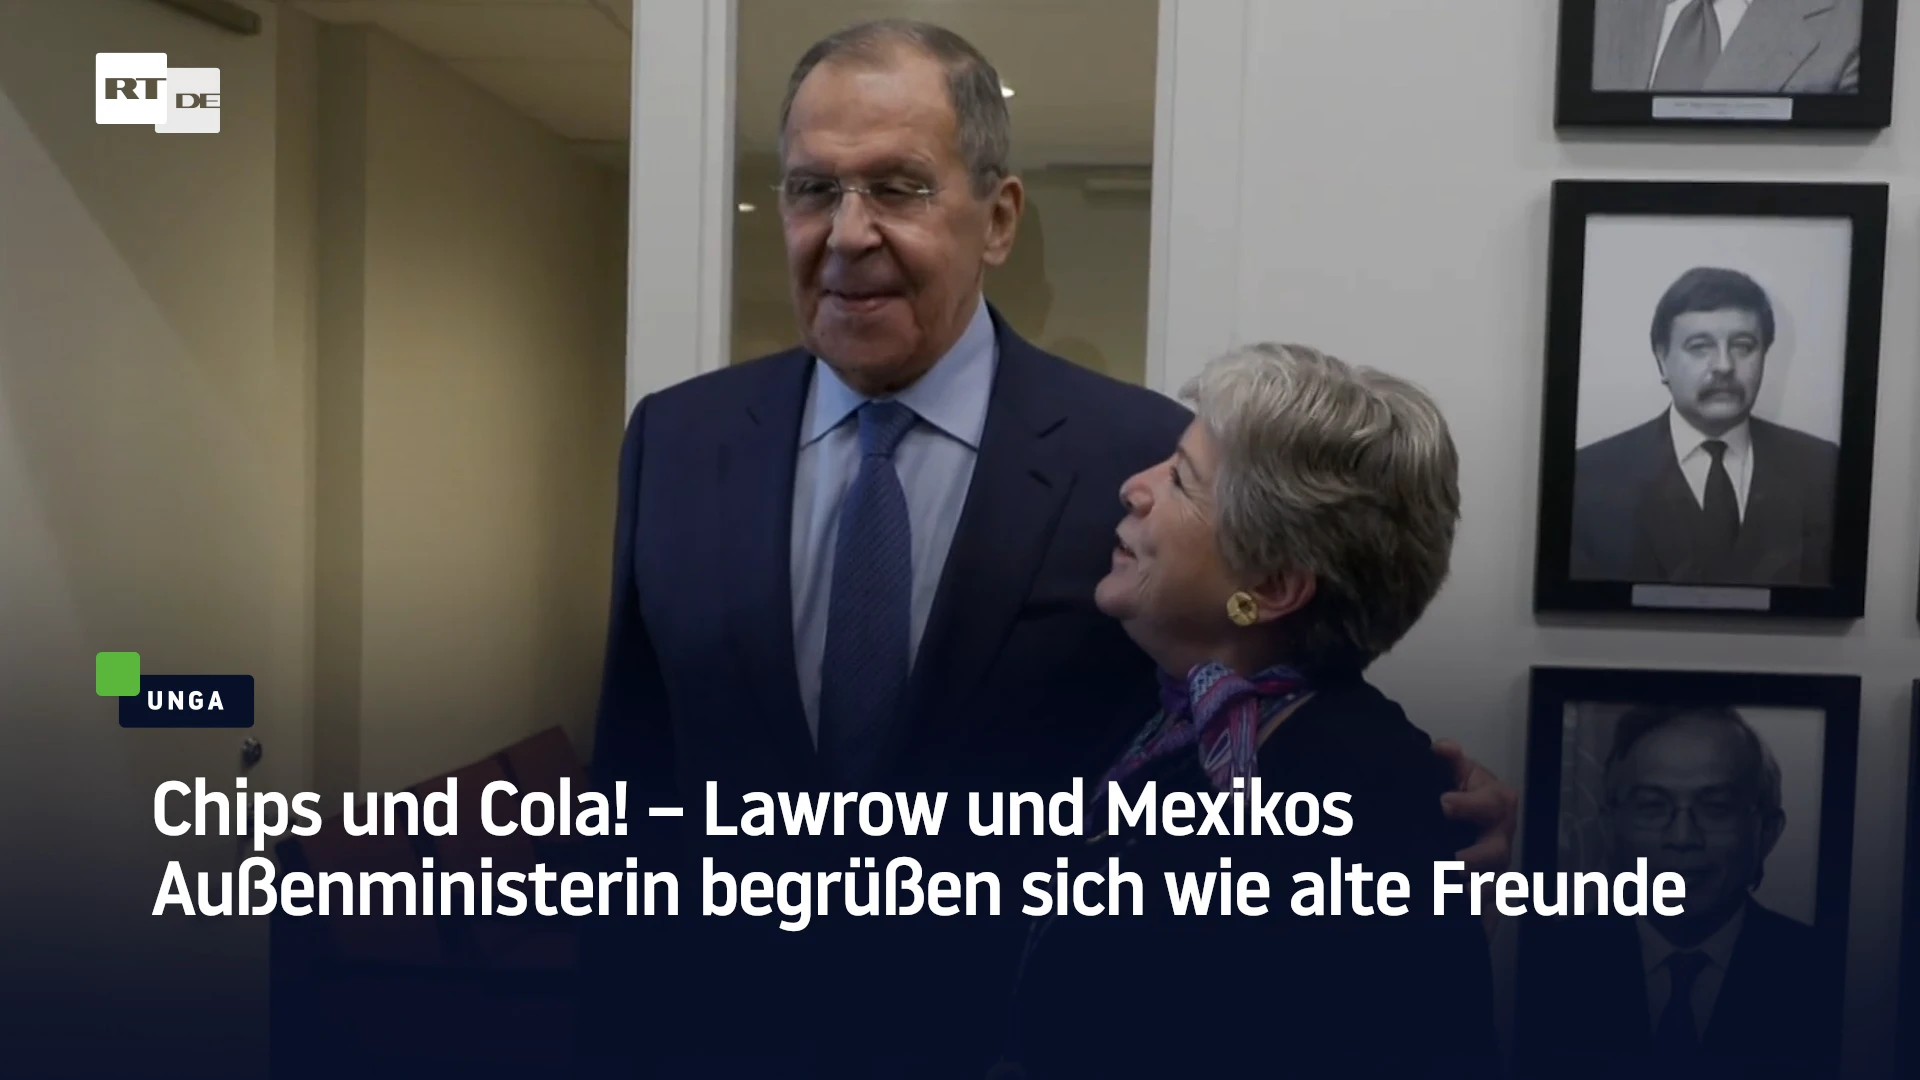 Chips und Cola! – Lawrow und Mexikos Außenministerin begrüßen sich wie alte Freunde